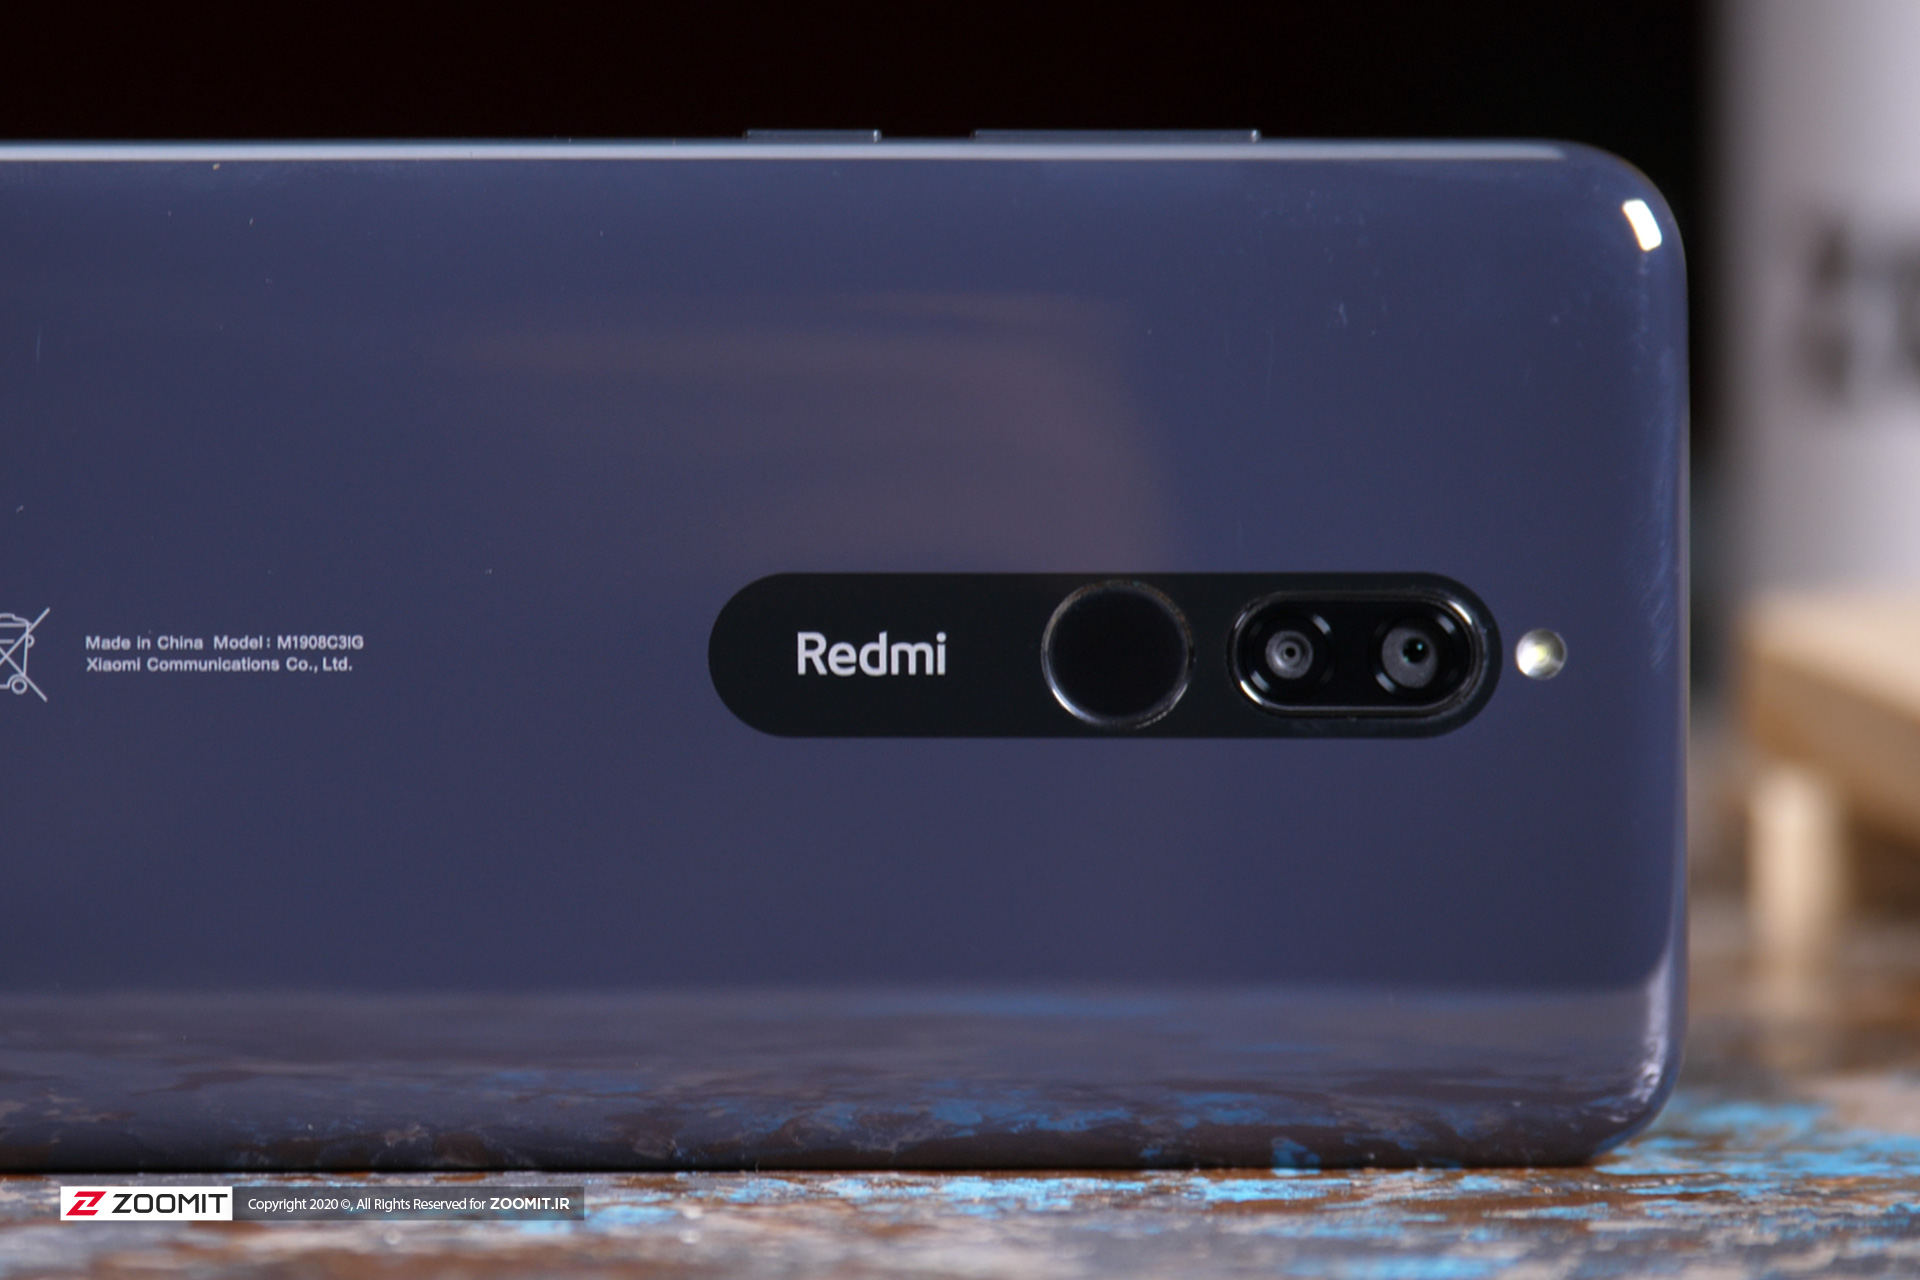 پنل پشتی گوشی شیائومی ردمی هشت (Xiaomi Redmi 8) شامل دوربین دوگانه و حسگر اثرانگشت